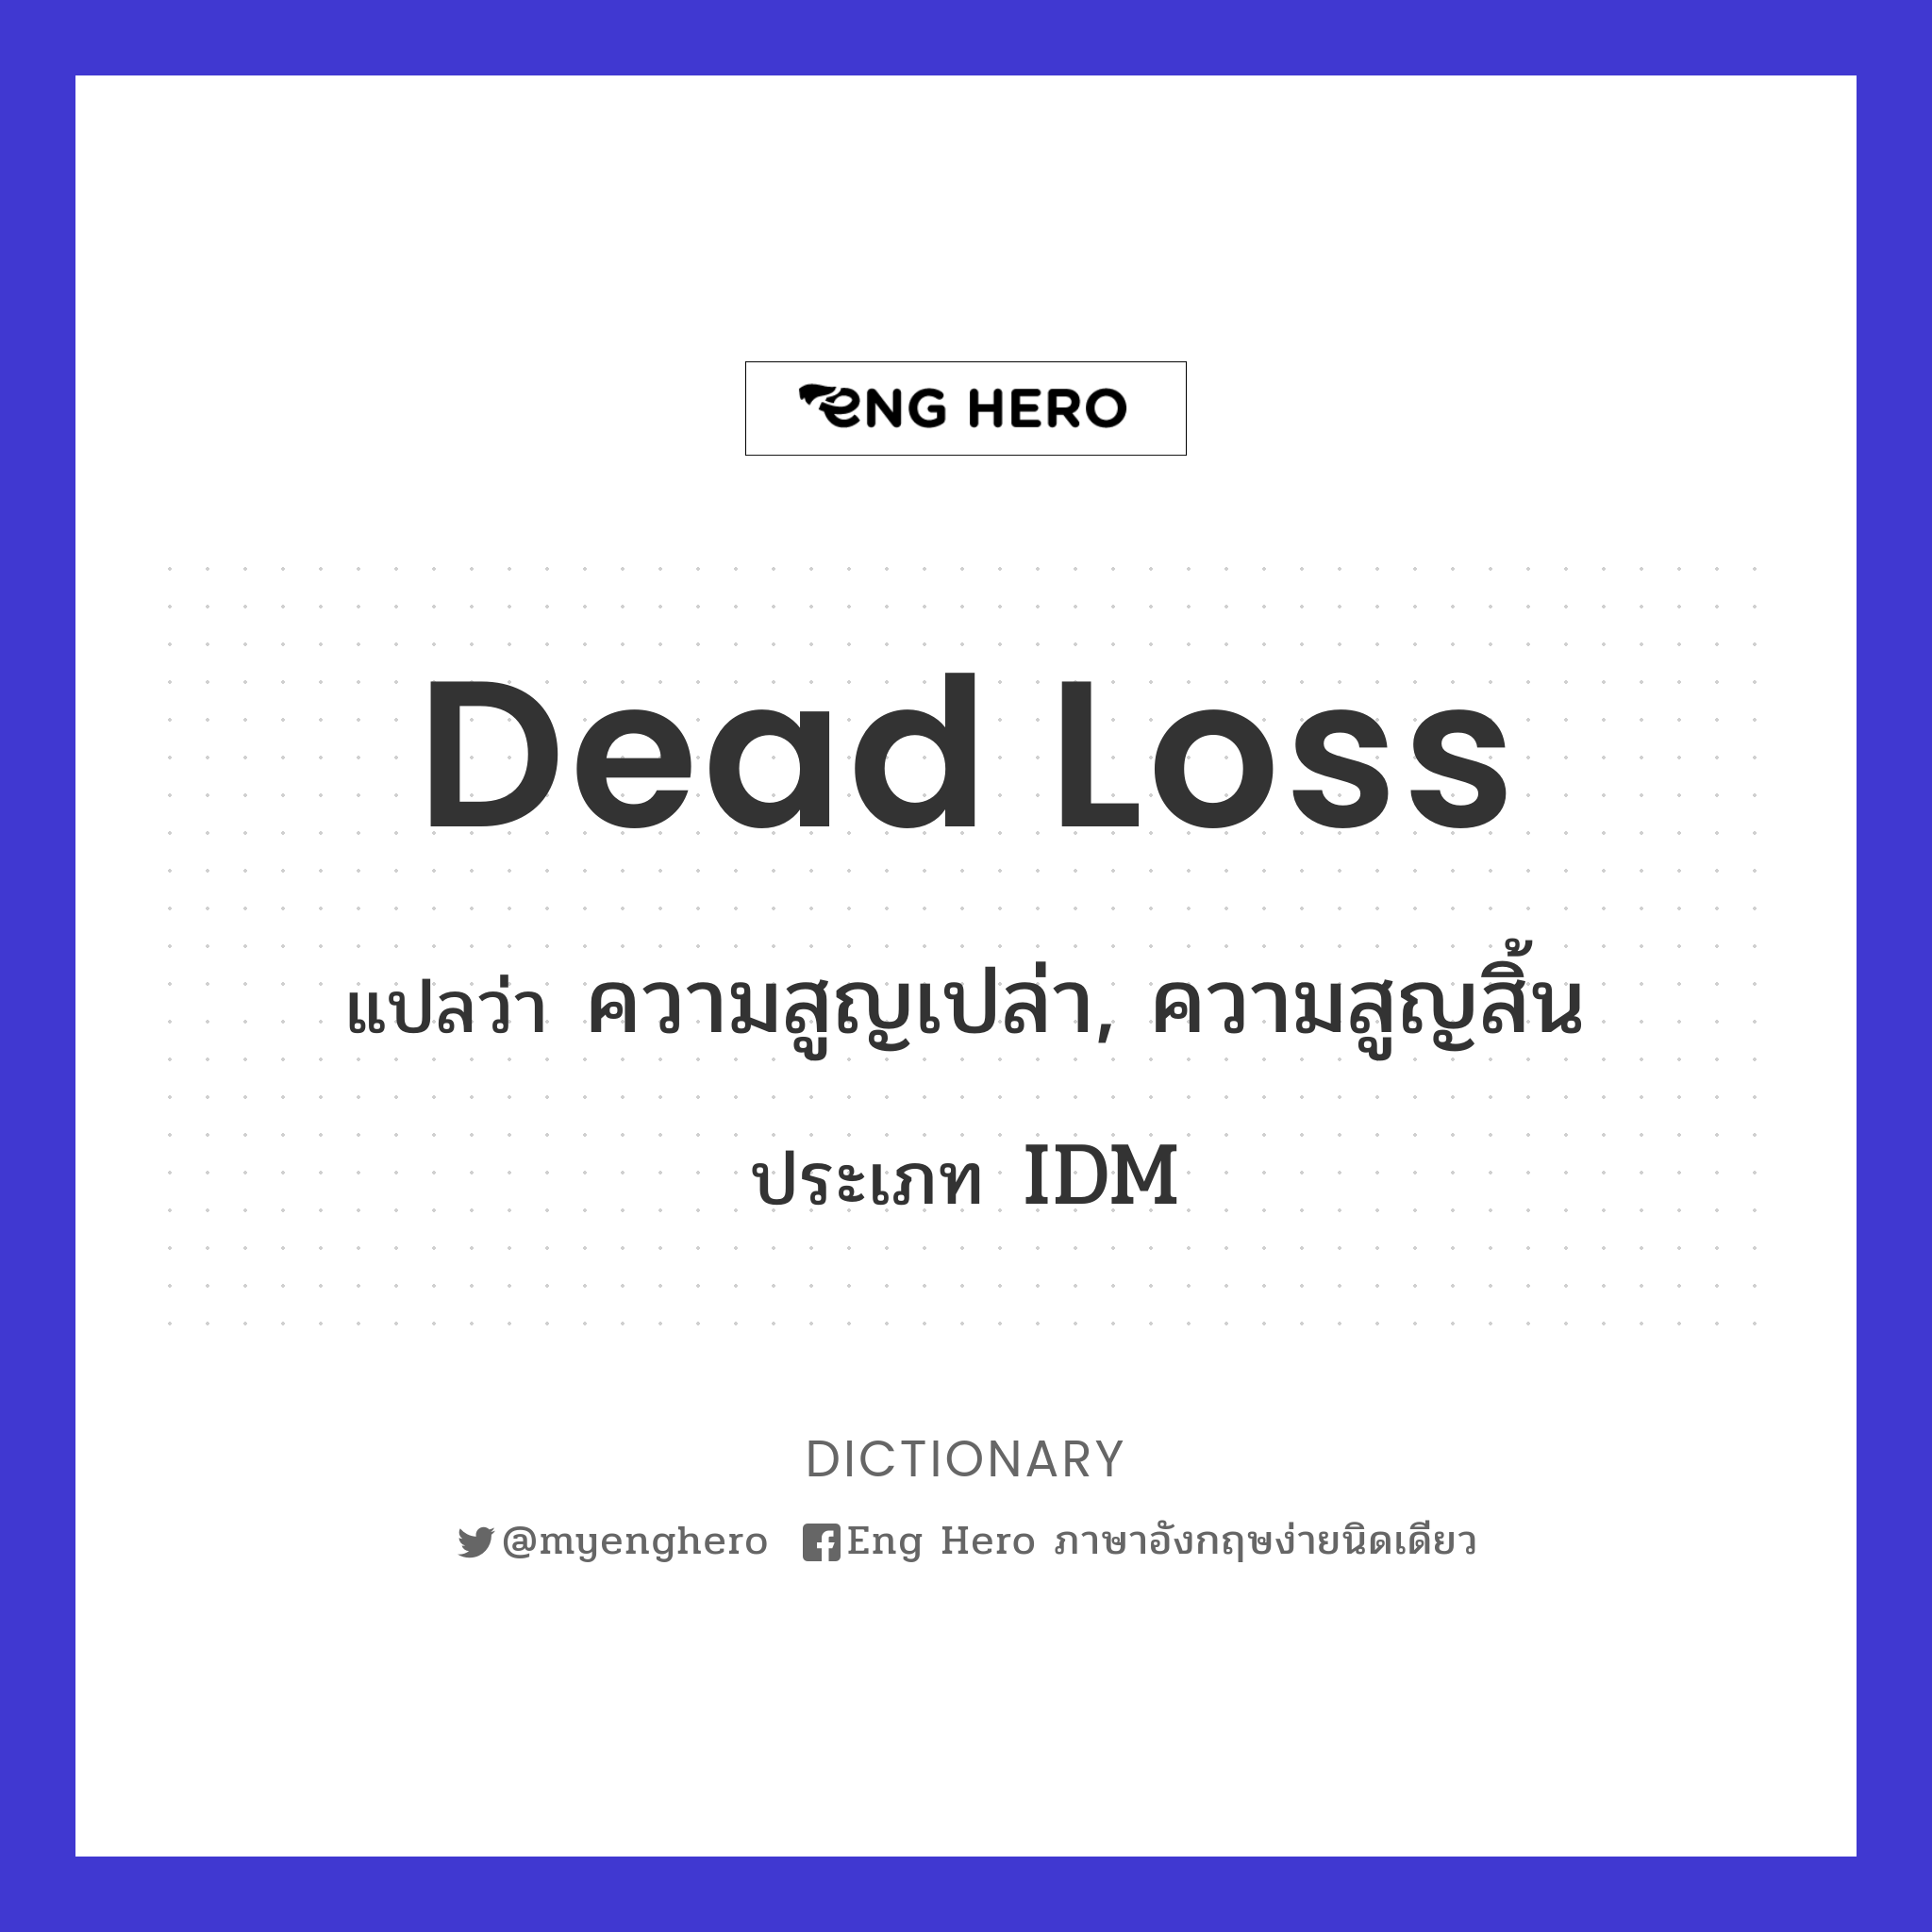 dead loss